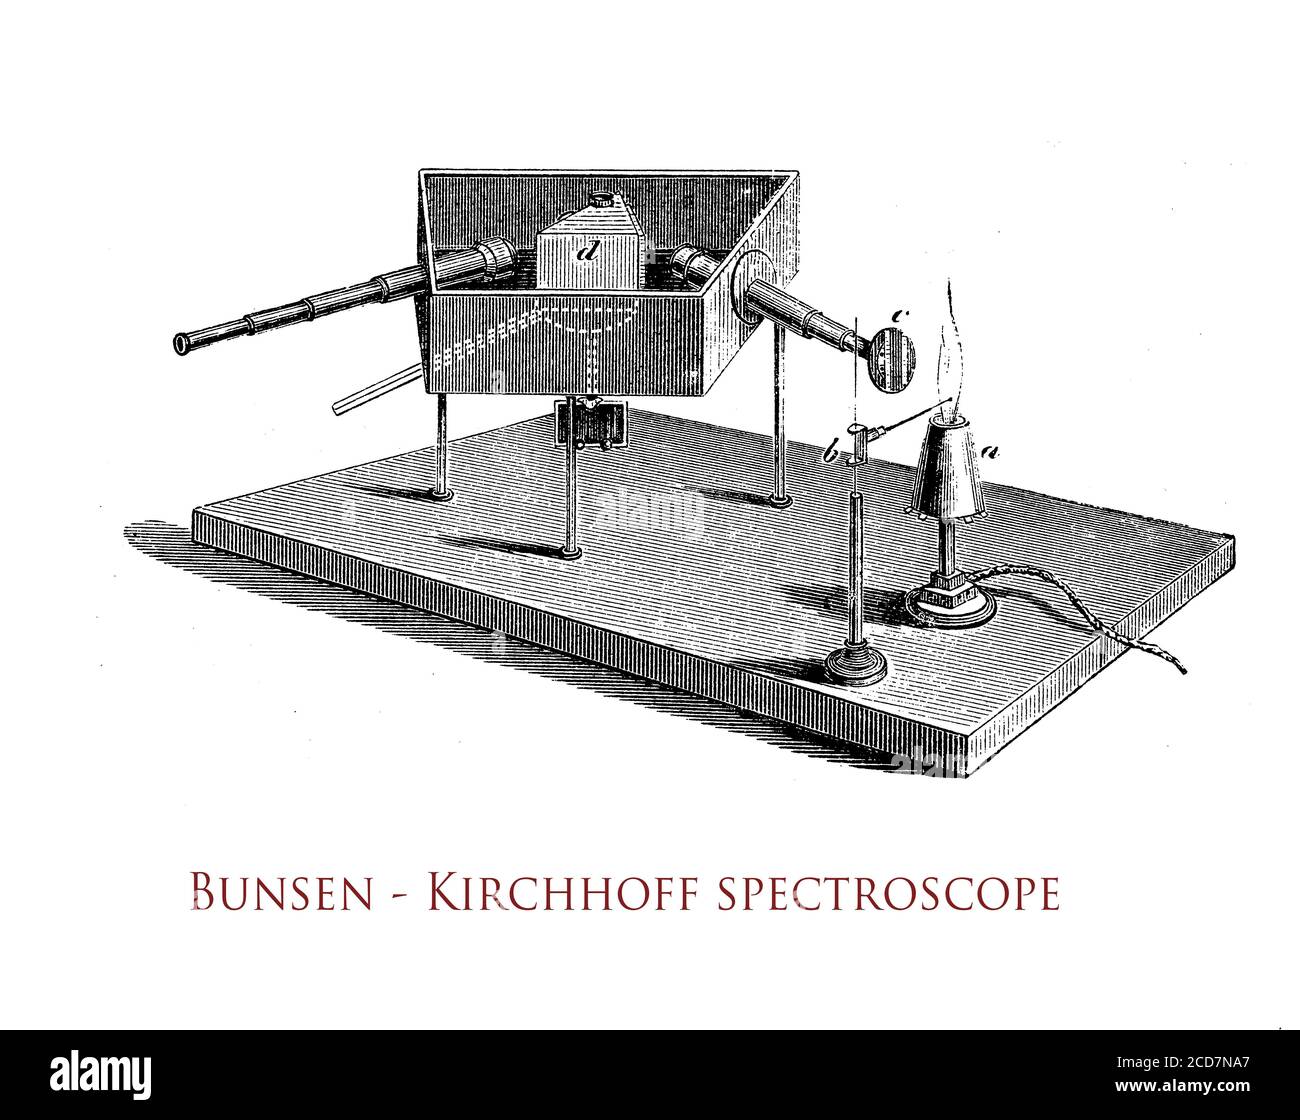 Le spectroscope développé au XIXe siècle par Bunsen et Kirchhoff fournit un système optique de haute qualité et une échelle facile à lire, permettant de mesurer des lignes spectrales atomiques discrètes Banque D'Images